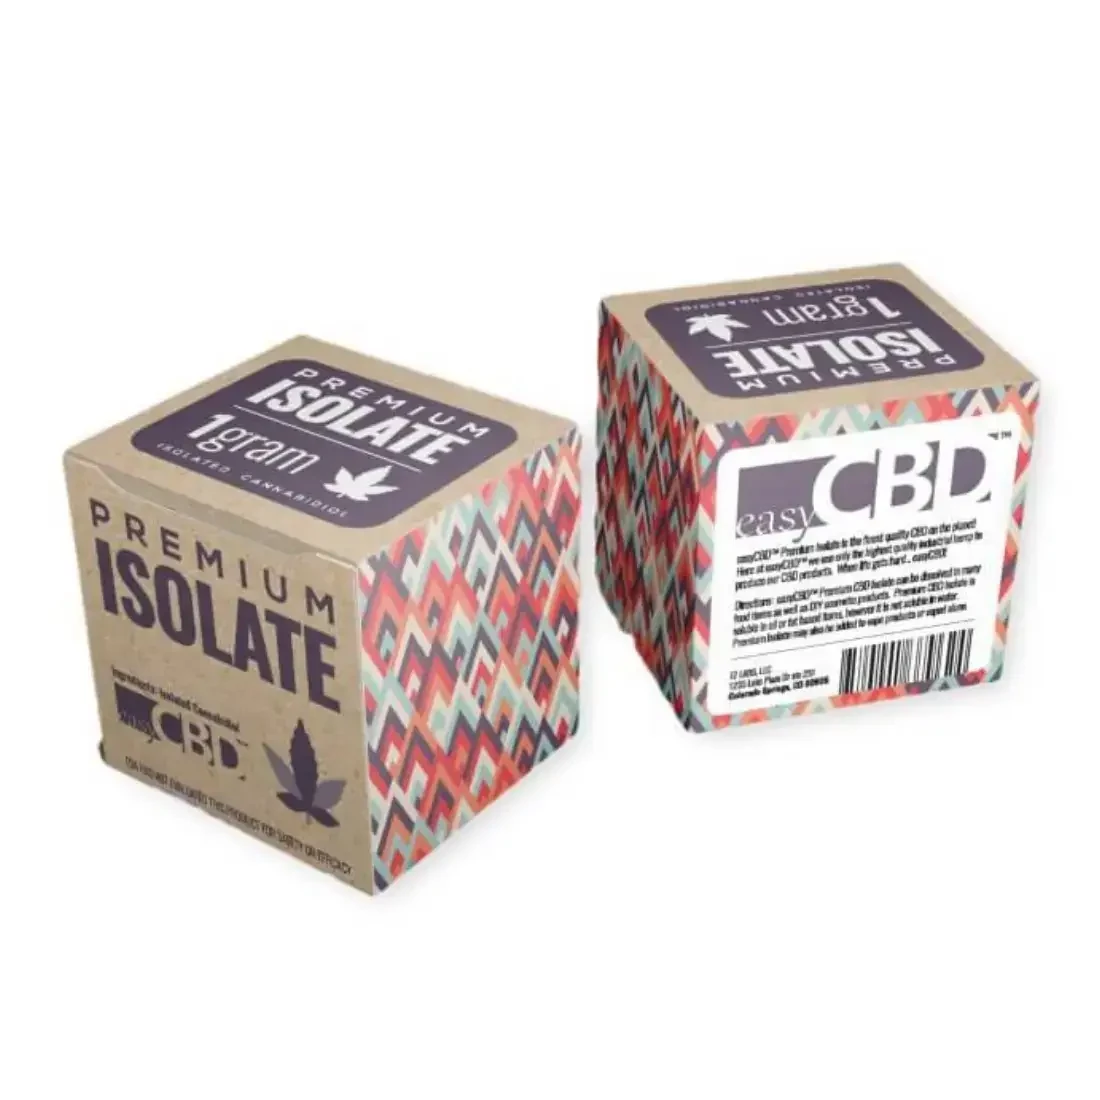 custom-design-cbd-isolate-packaging-boxes